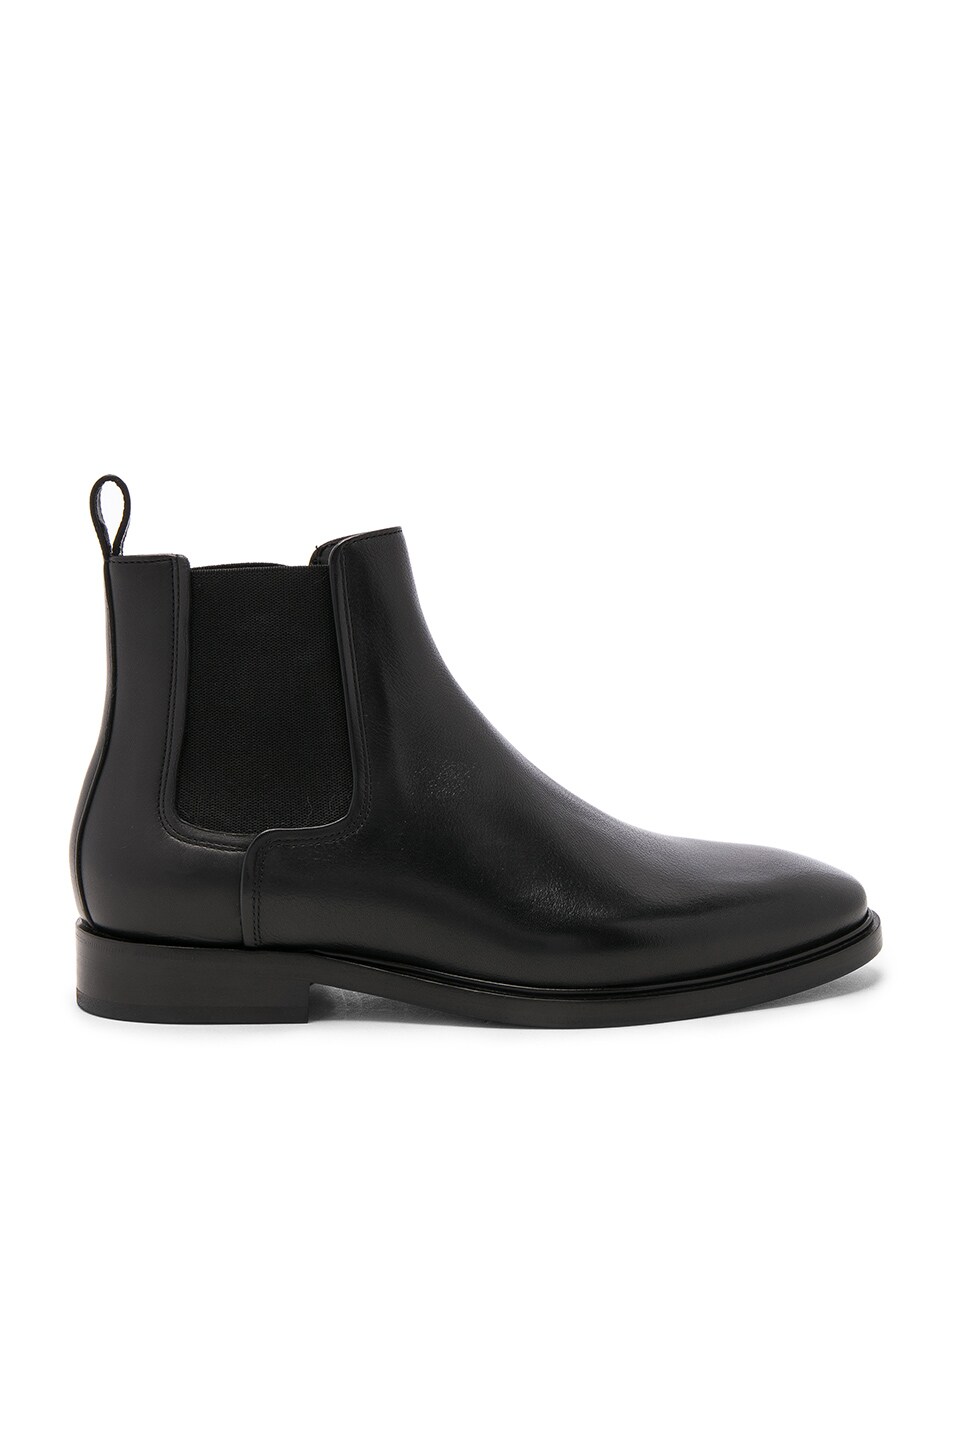 LANVIN Leather Chelsea Boots, Black | ModeSens